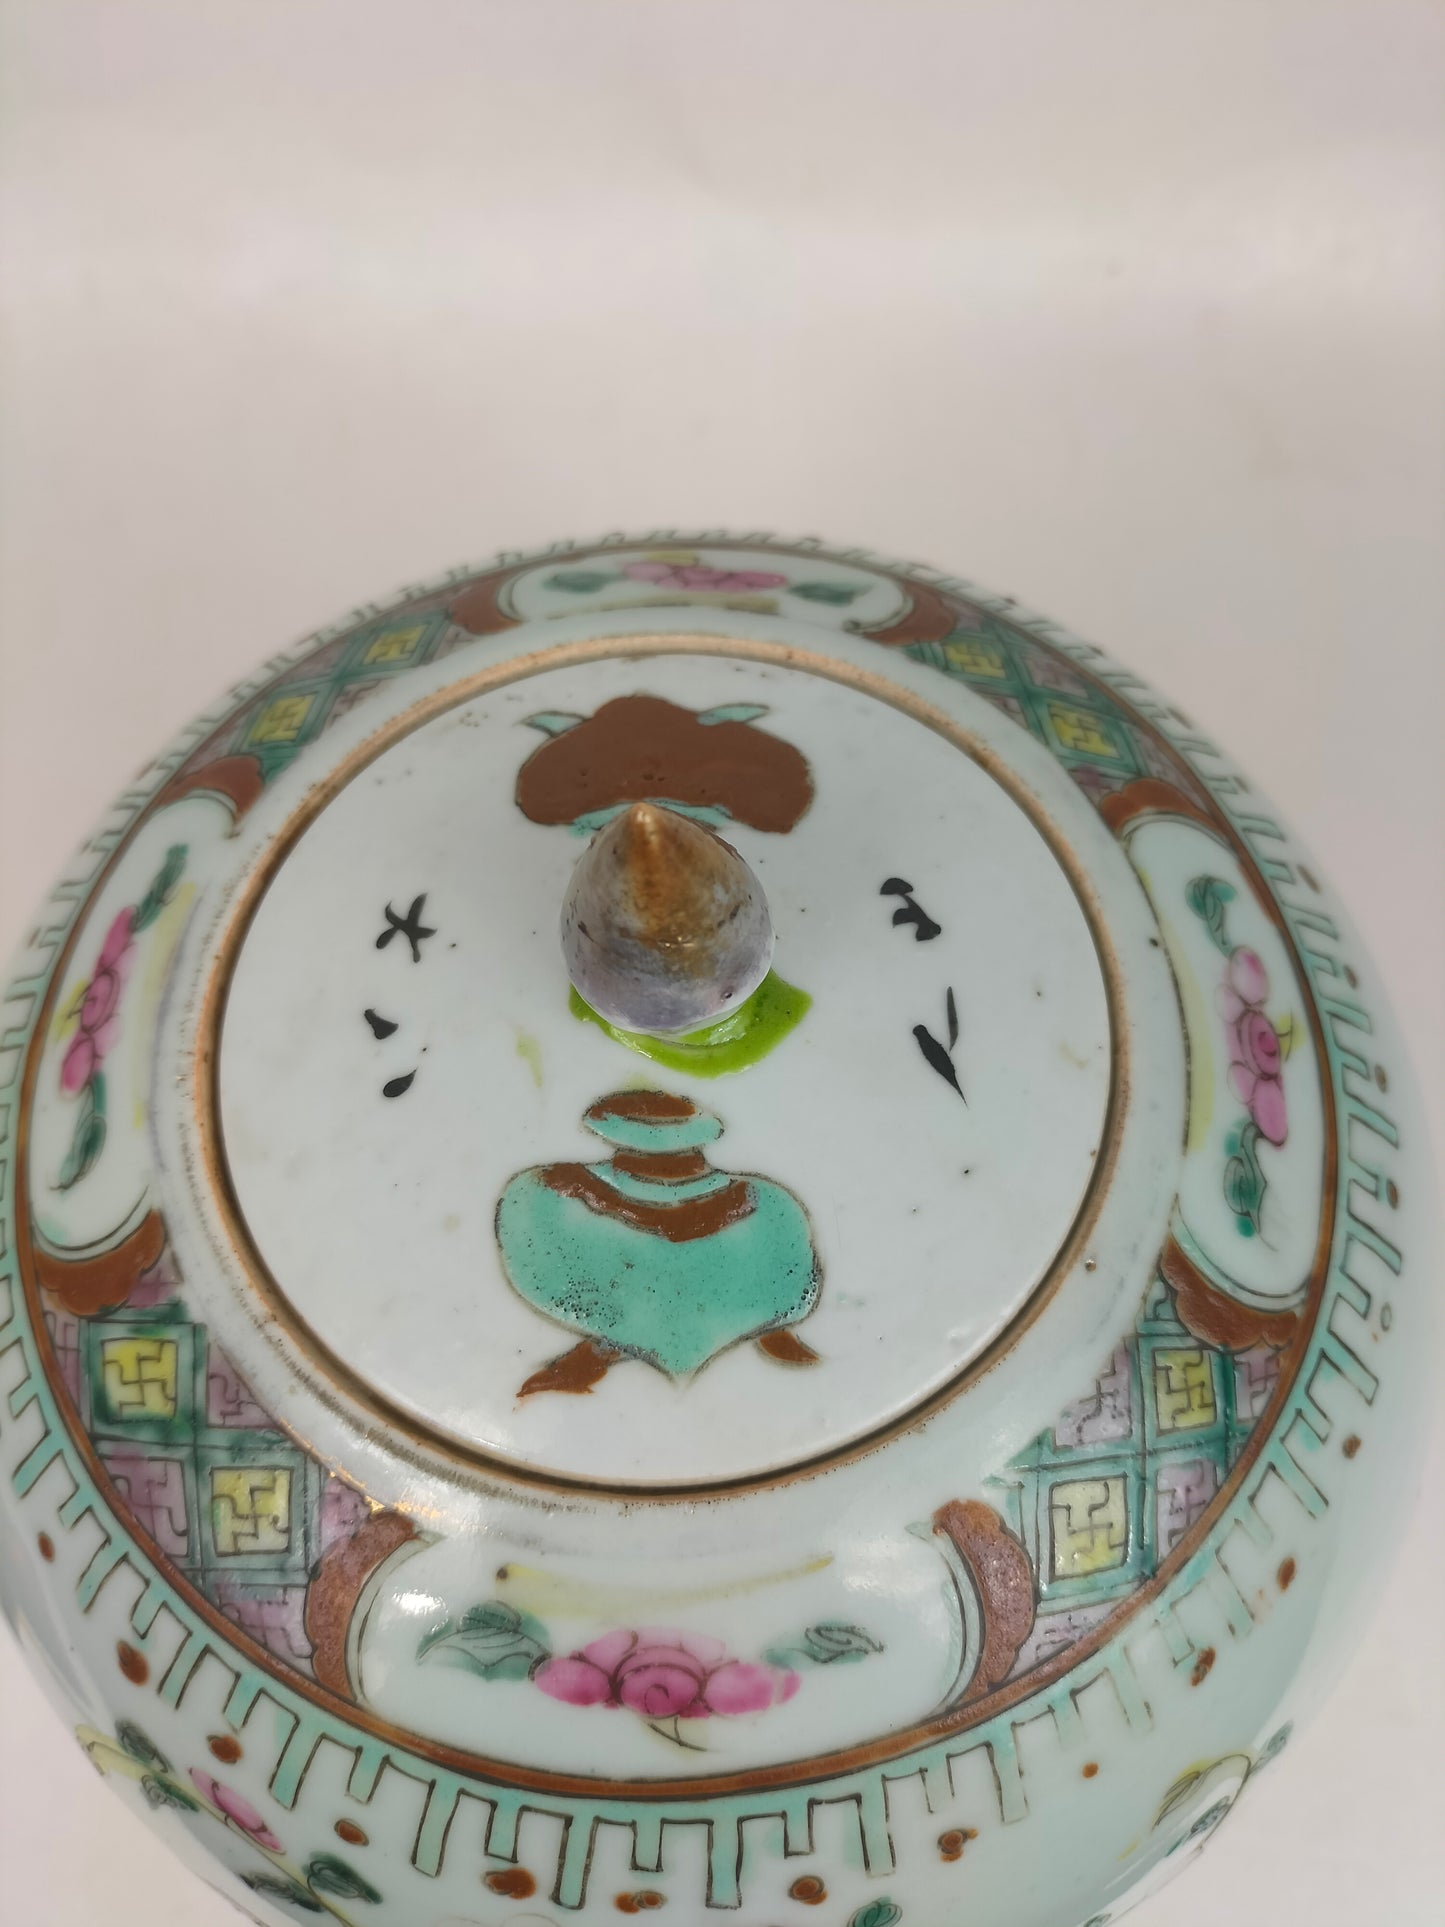 Balang halia famille verte antik Cina dihiasi dengan bakul bunga // Dinasti Qing - abad ke-19